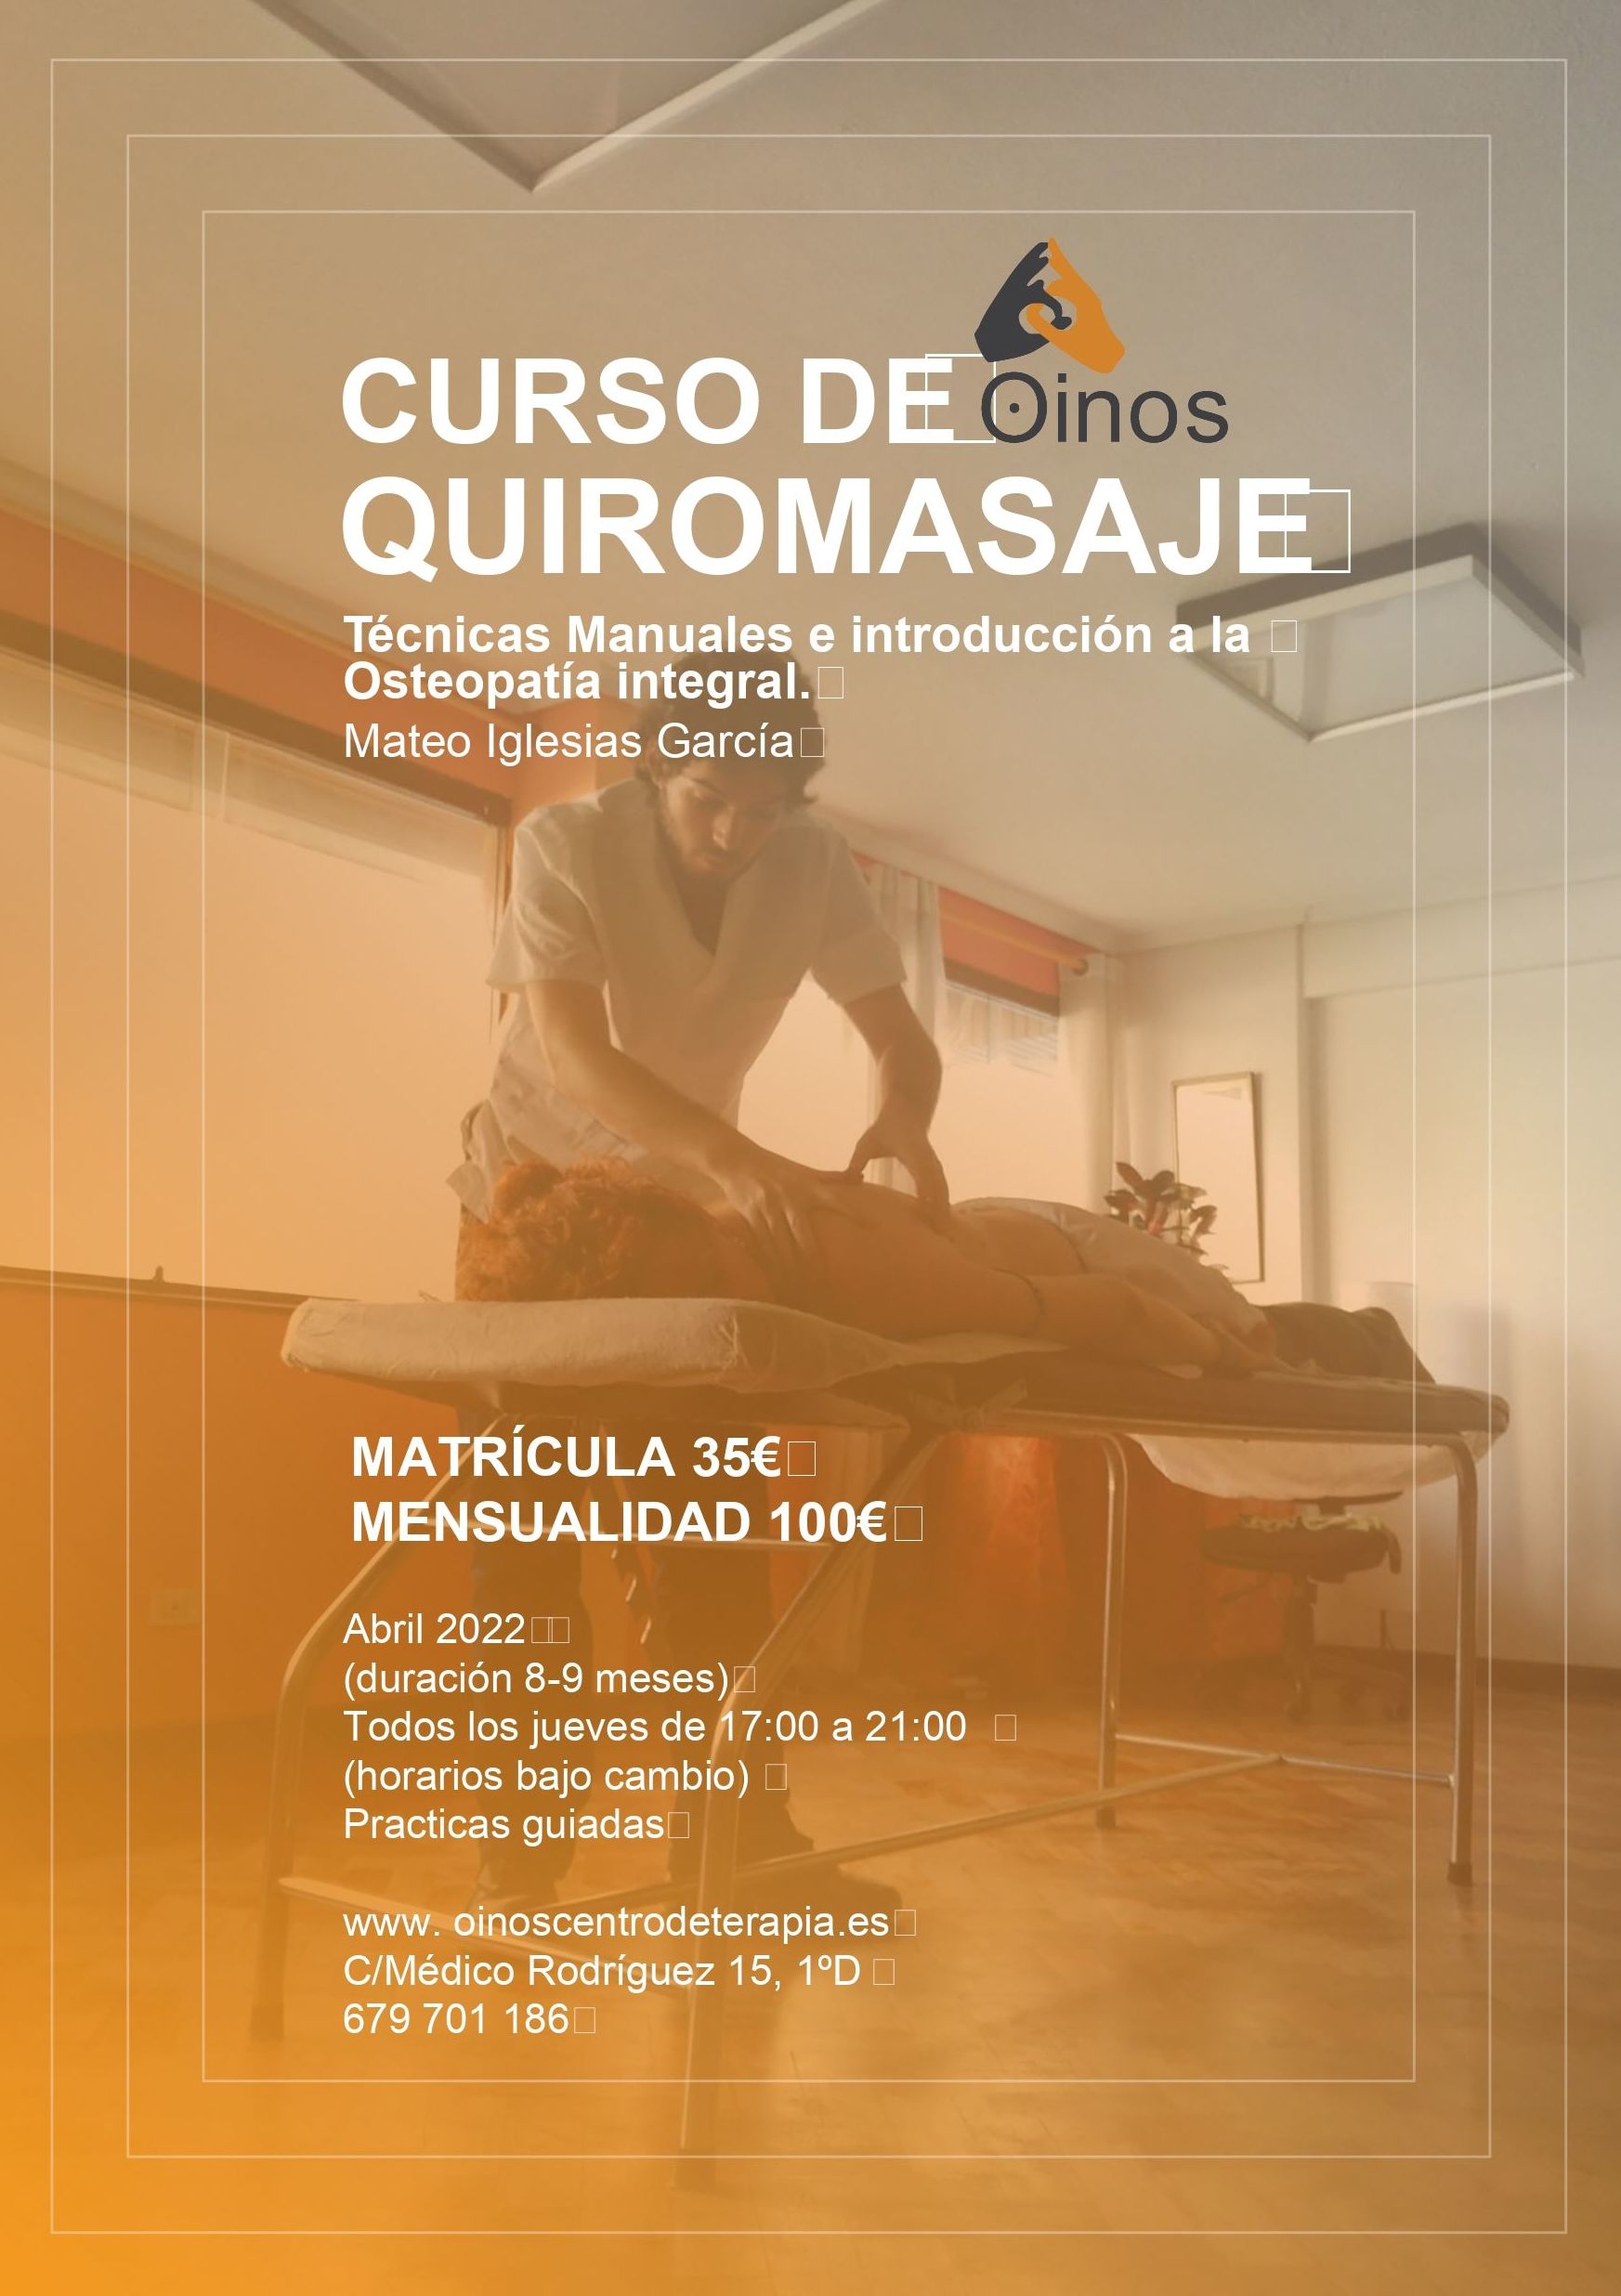 Foto 1 de Terapias manuales en A Coruña | Oinos Centro de Terapia